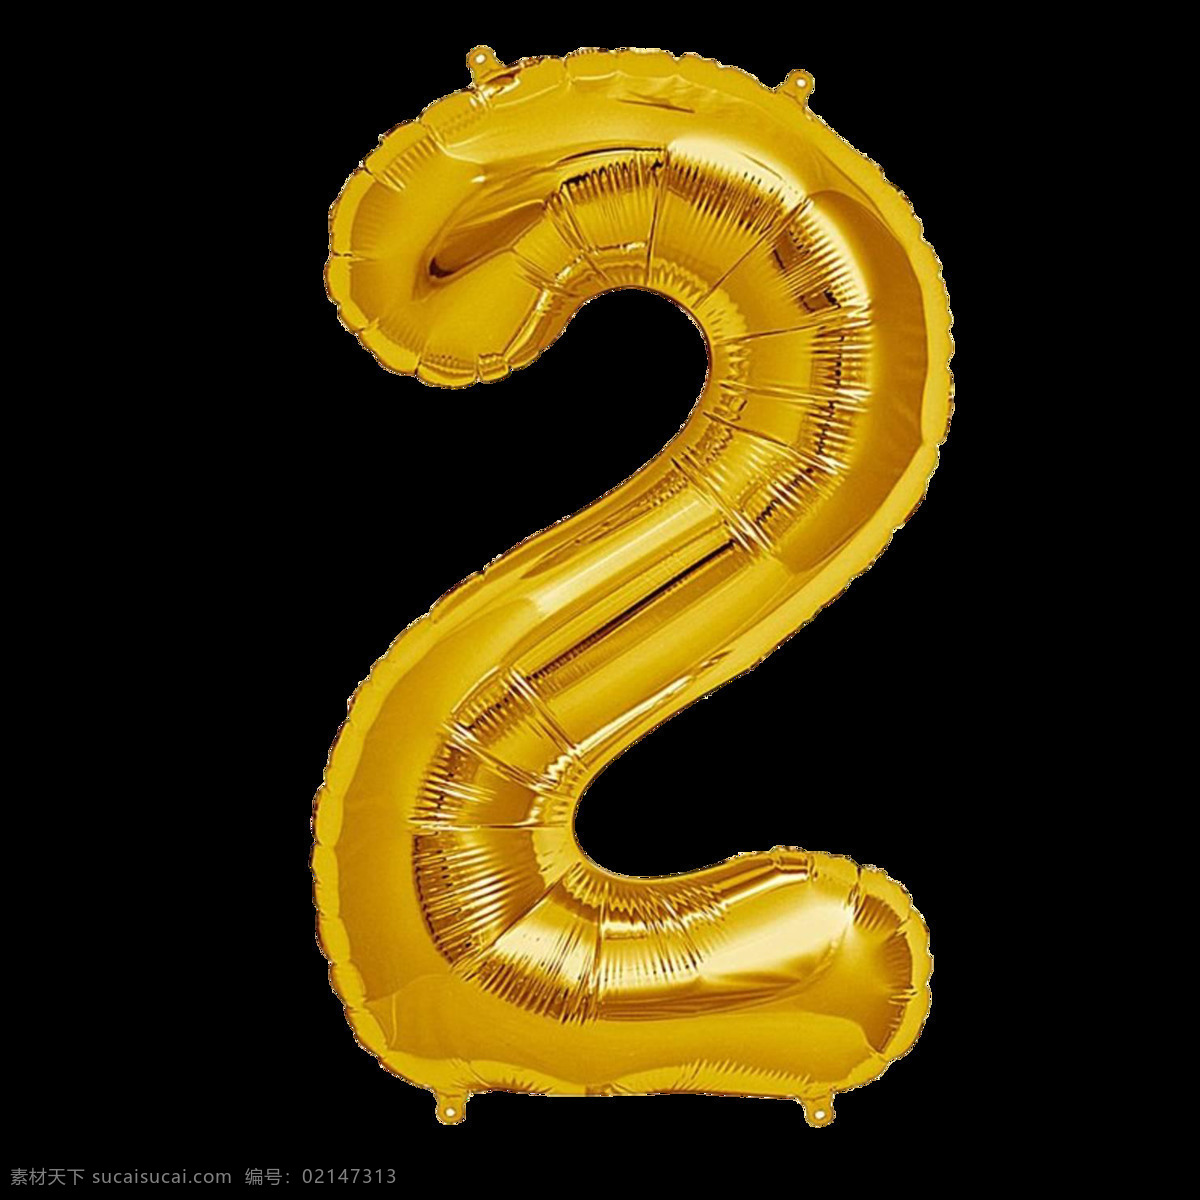 金色气球字2 金色气球字 气球字 气球数字 铝膜气球字母 装饰字 派对气球 气球文字 字母气球 铝箔气球 3d设计 3d作品